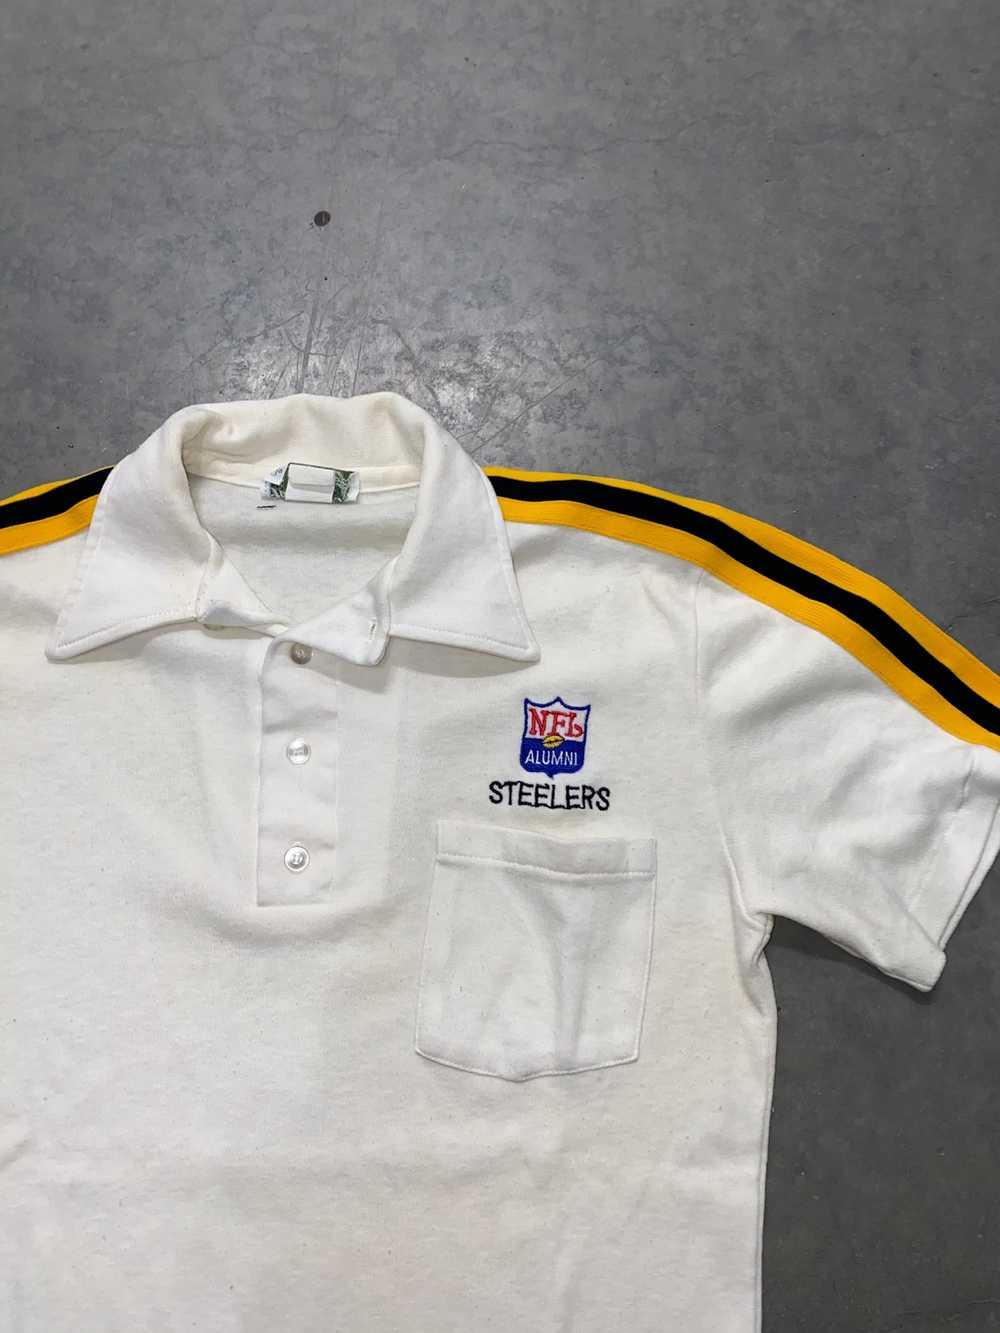 NFL × Vintage vintage 70s/80s steelers shirt - image 2